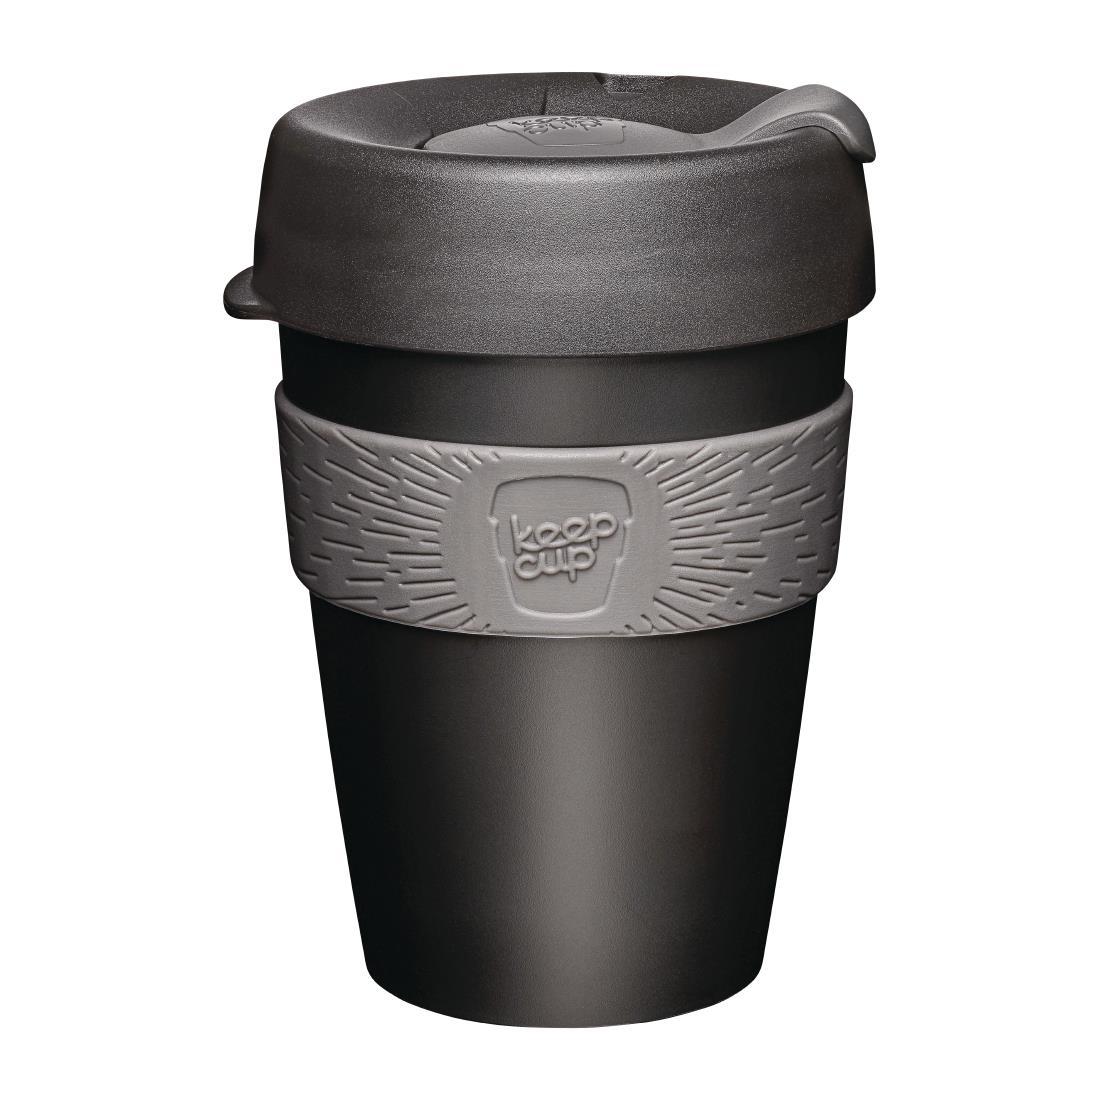 KeepCup Original Reusable Coffee Cup Doppio 12oz - DY482  - 1